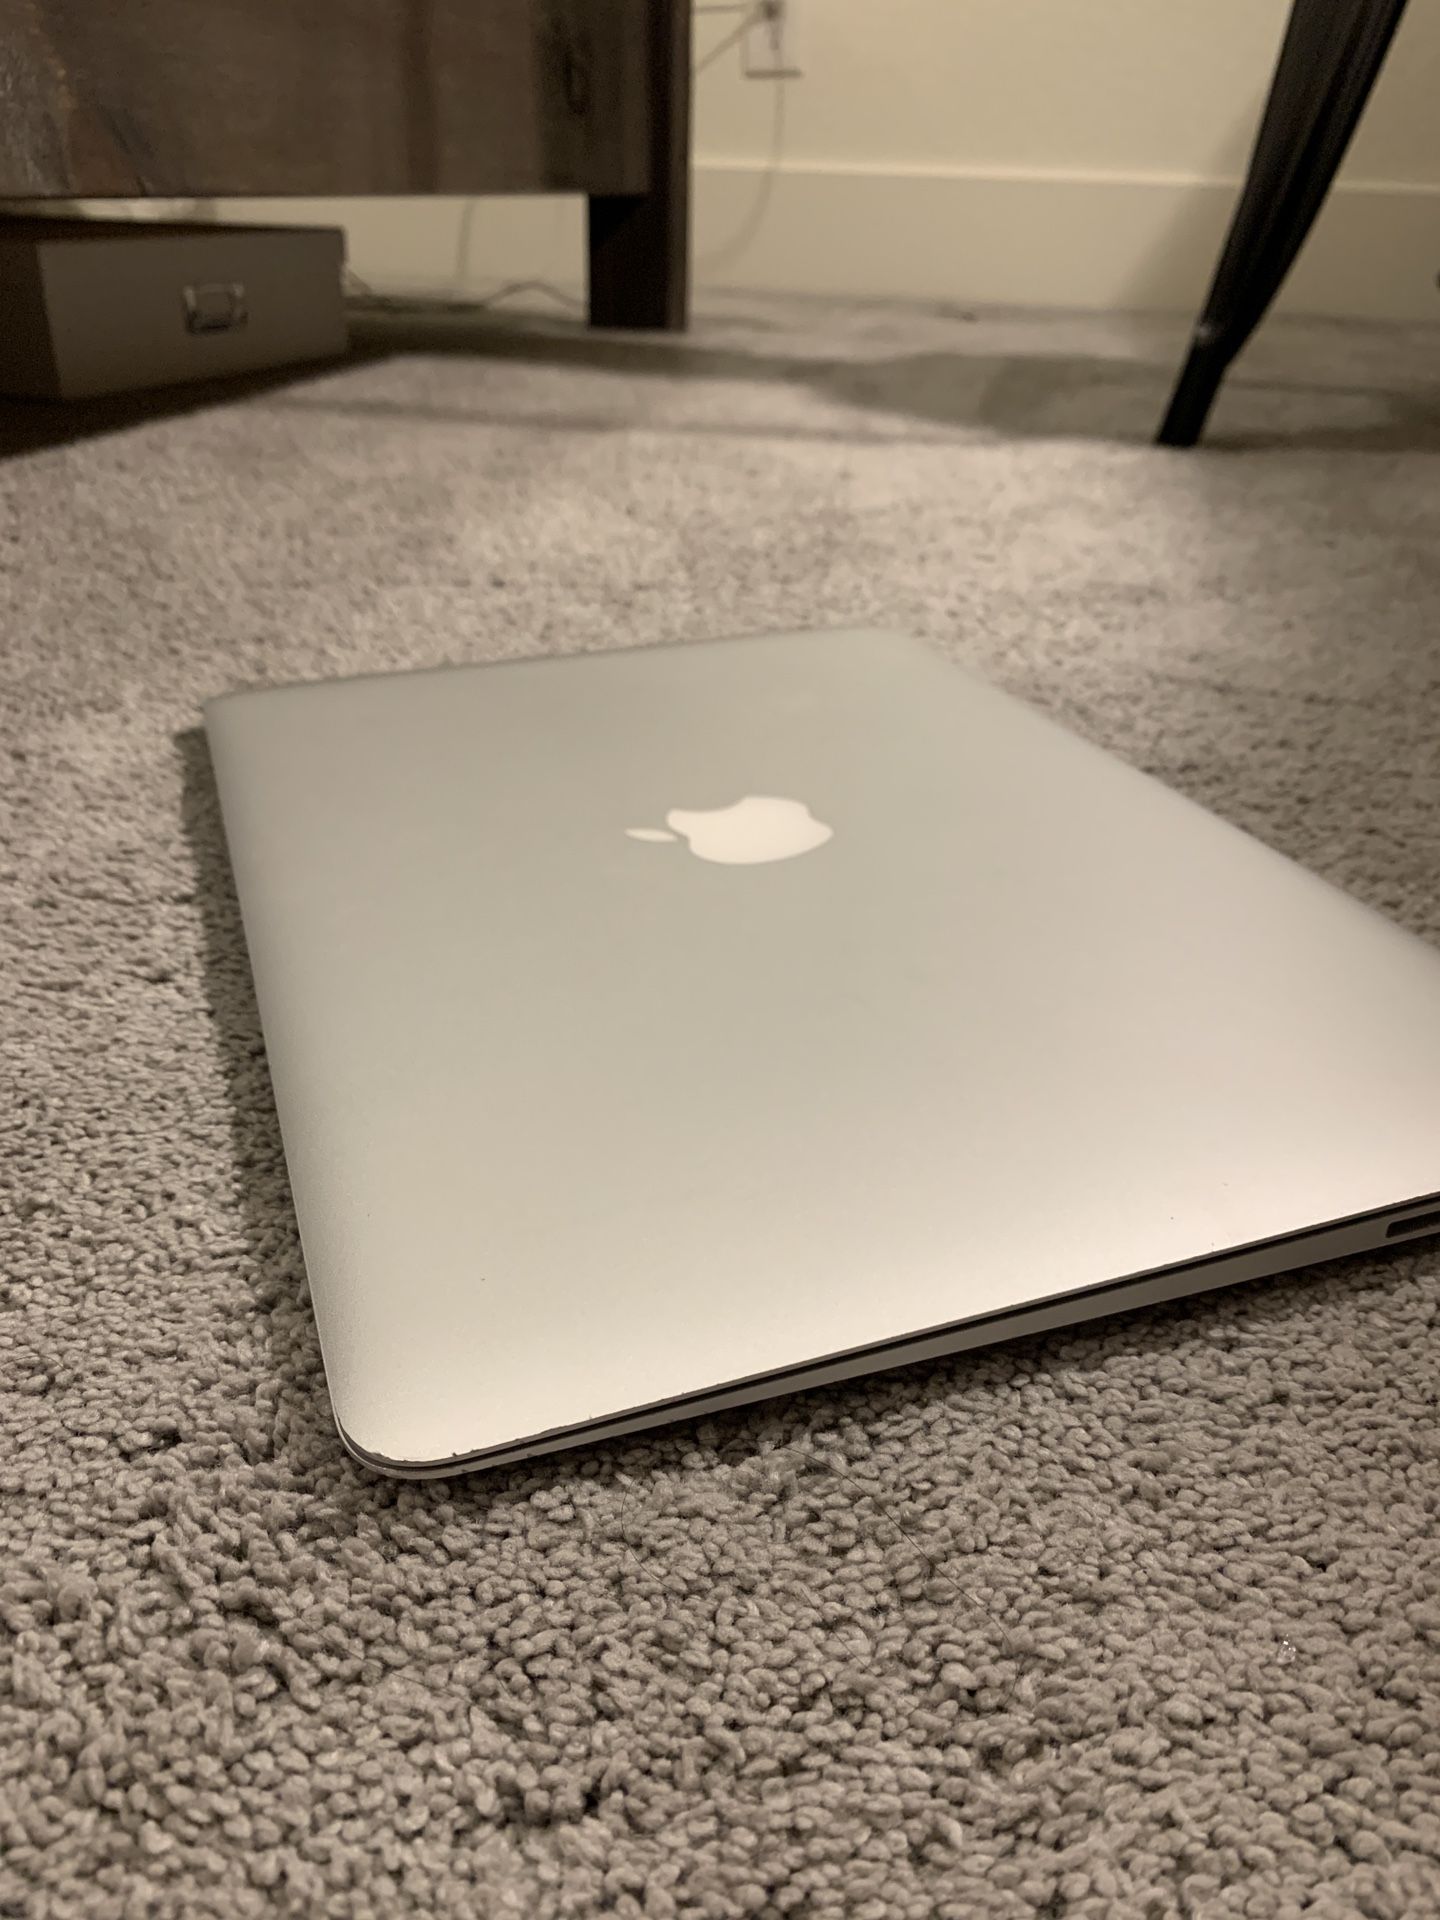 2017 MacBook Air